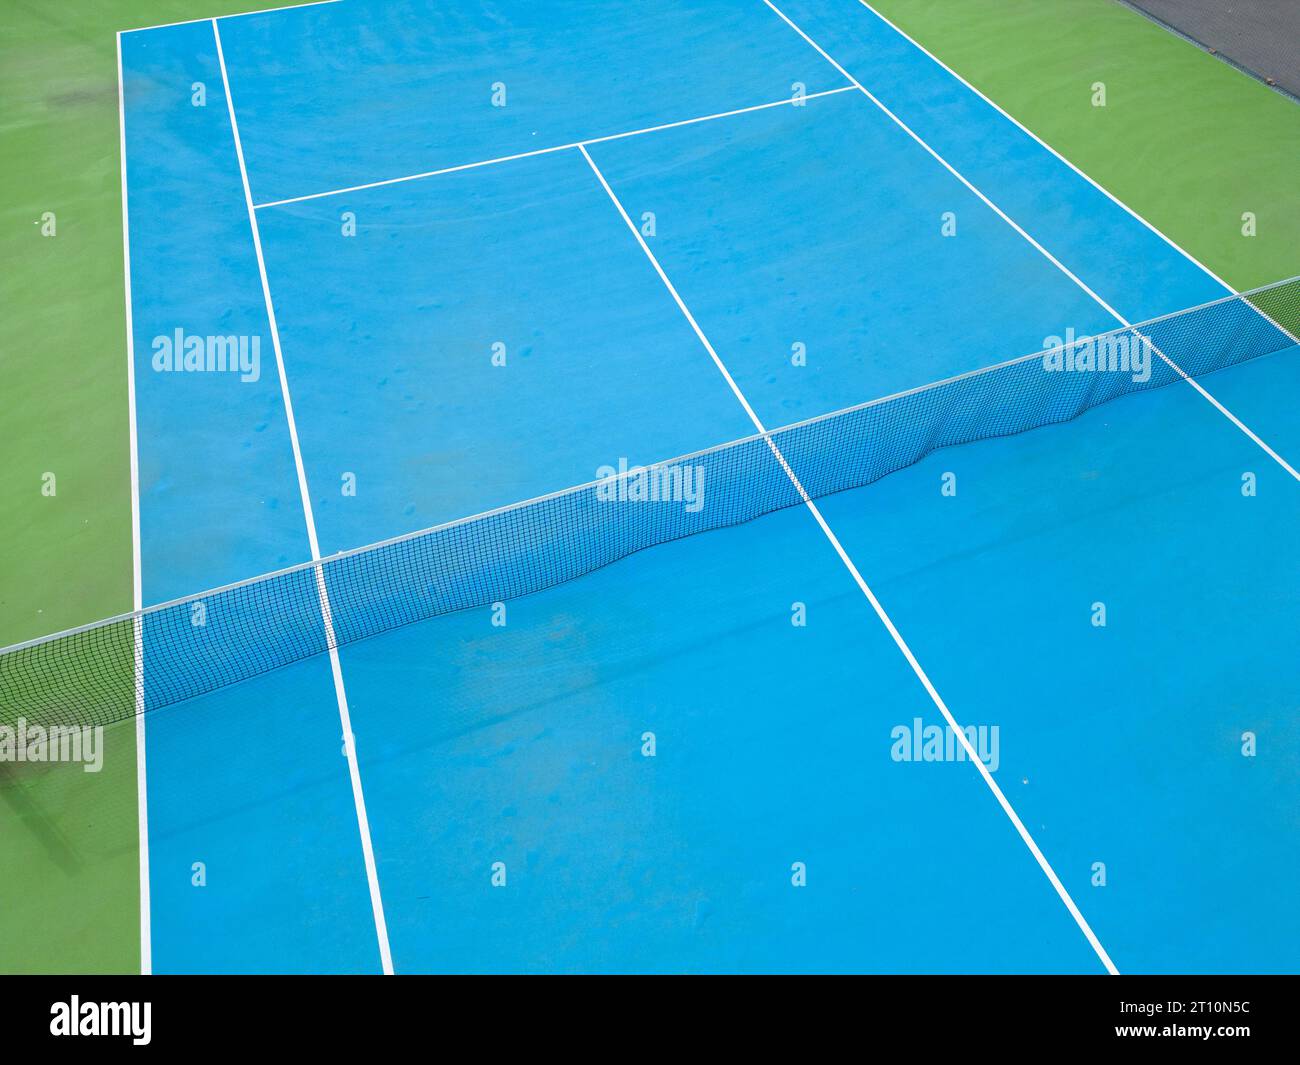 Aus der Vogelperspektive auf einen ruhigen blau-grünen Tennisplatz in einem leeren Zustand, der die gut gepflegte Oberfläche des Platzes und die Linien, die ihn markieren, hervorhebt Stockfoto